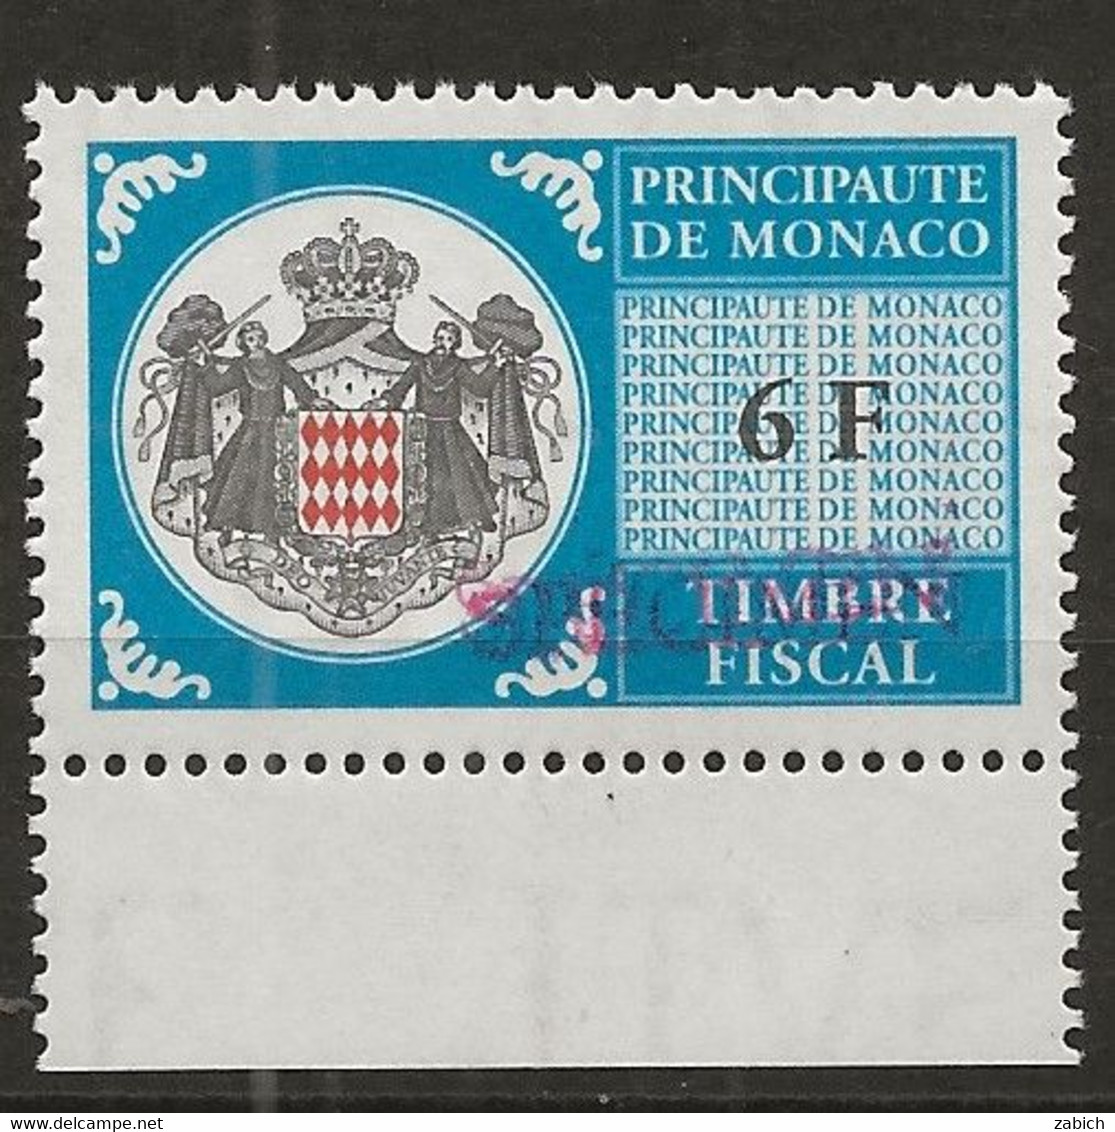 TIMBRES FISCAUX DE MONACO SERIE UNIFIEE N° 101 6F Bleu Rare Surchargé Specimen Neuf Gomme Mnh (**) - Revenue